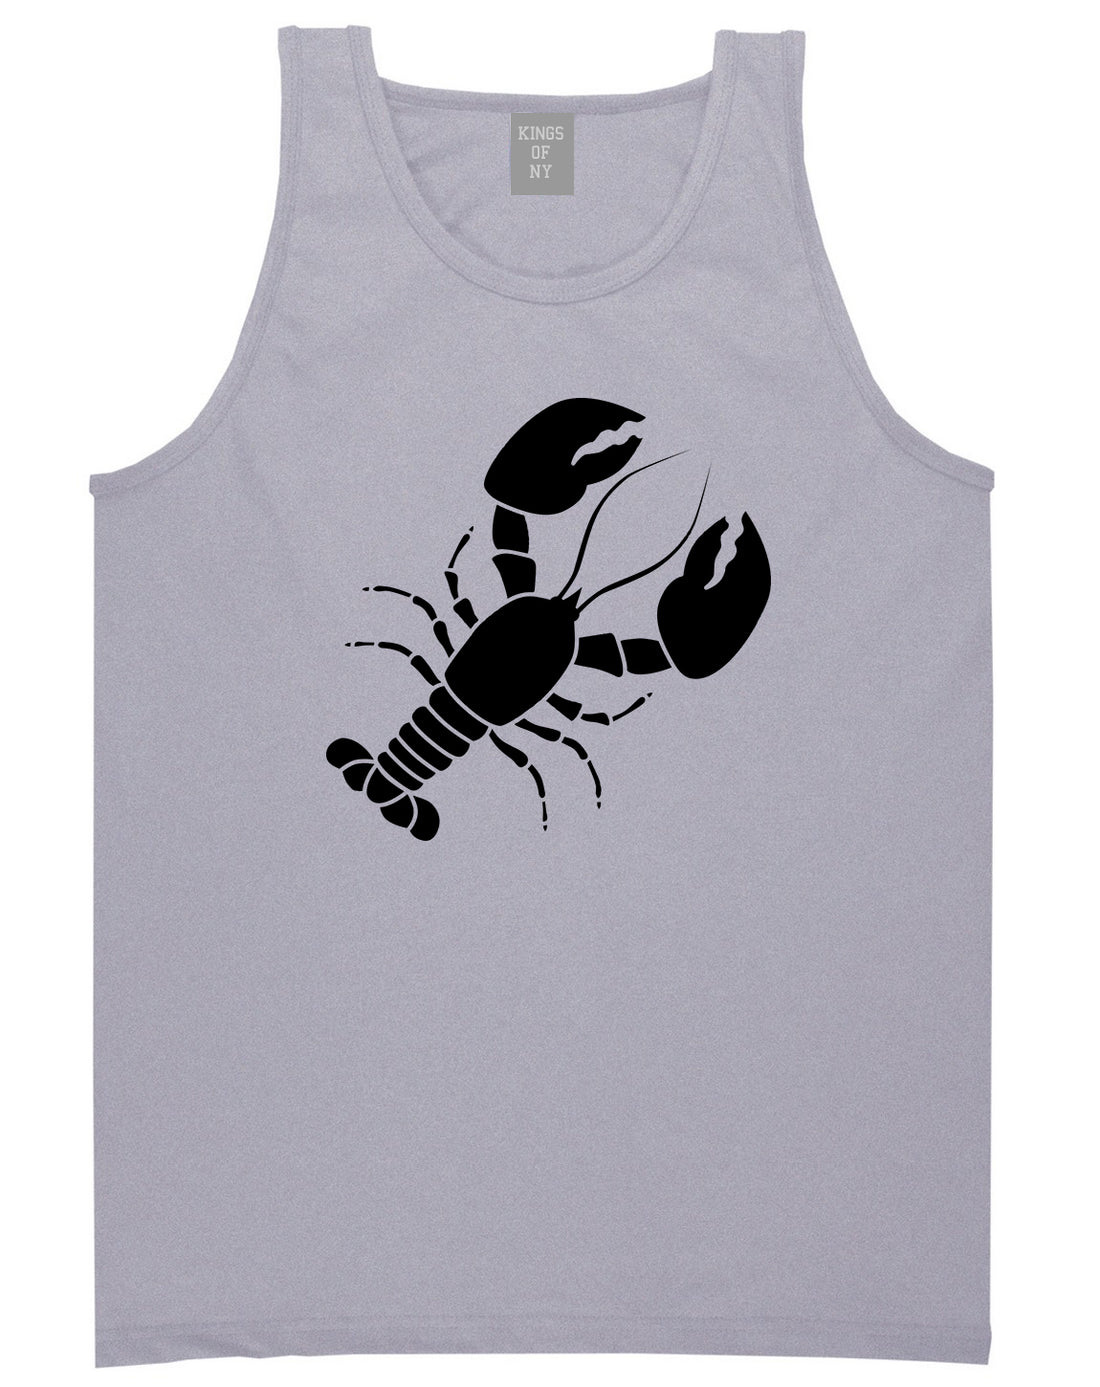 Lobster Mens Tank Top Shirt Grey by Kings Of NY